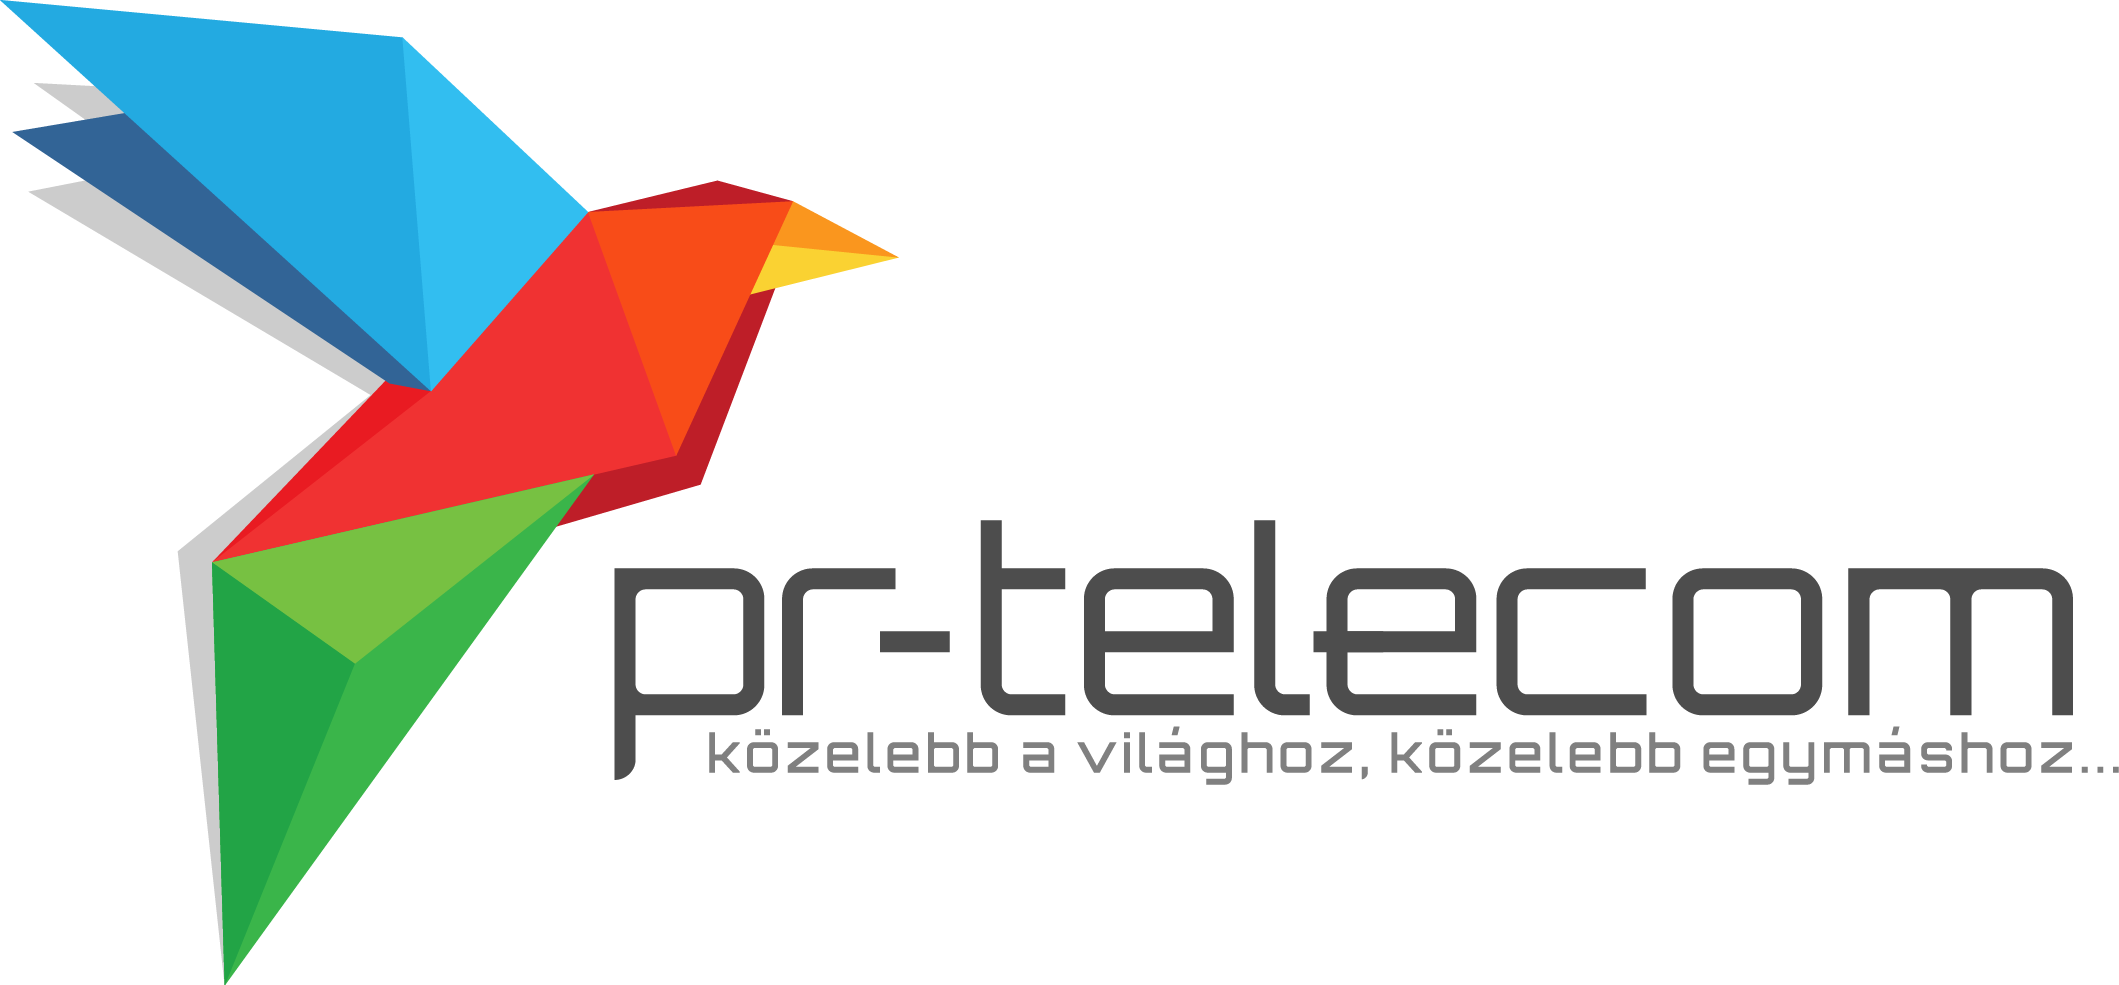 PR-Telecom